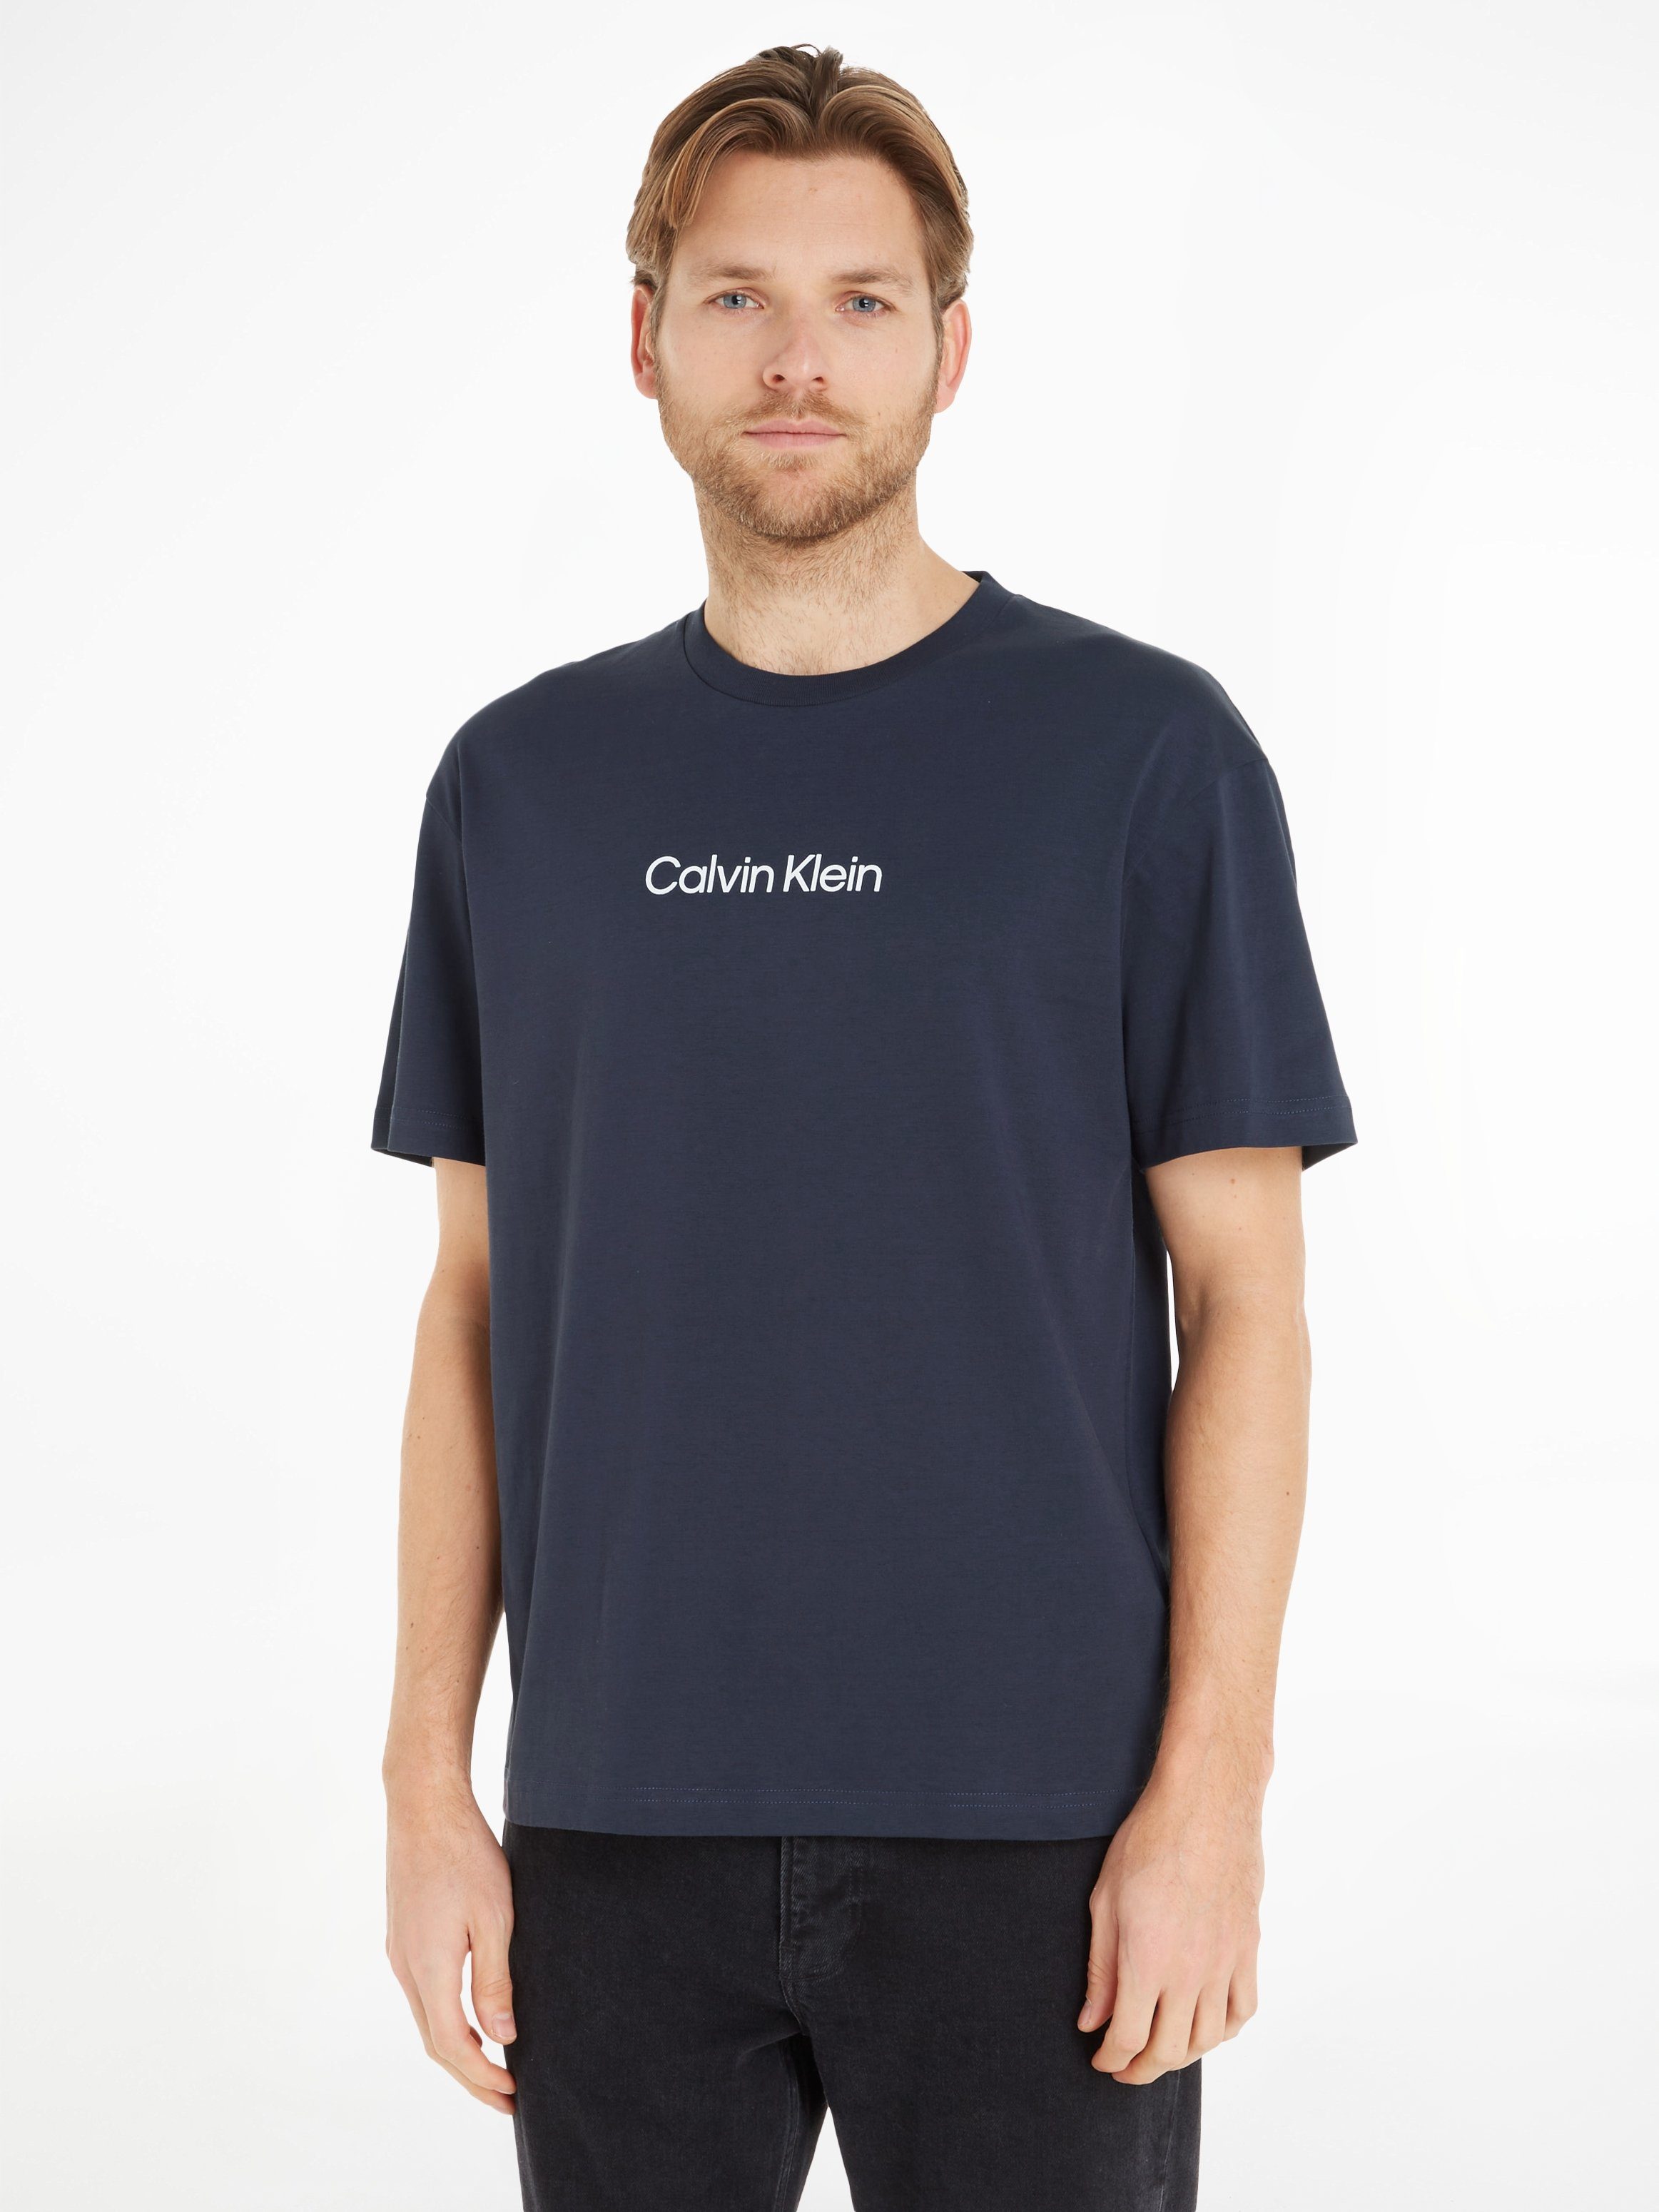 Aktueller Trend der Saison COMFORT Night Markenlabel HERO T-SHIRT aufgedrucktem mit LOGO Klein Calvin Sky T-Shirt